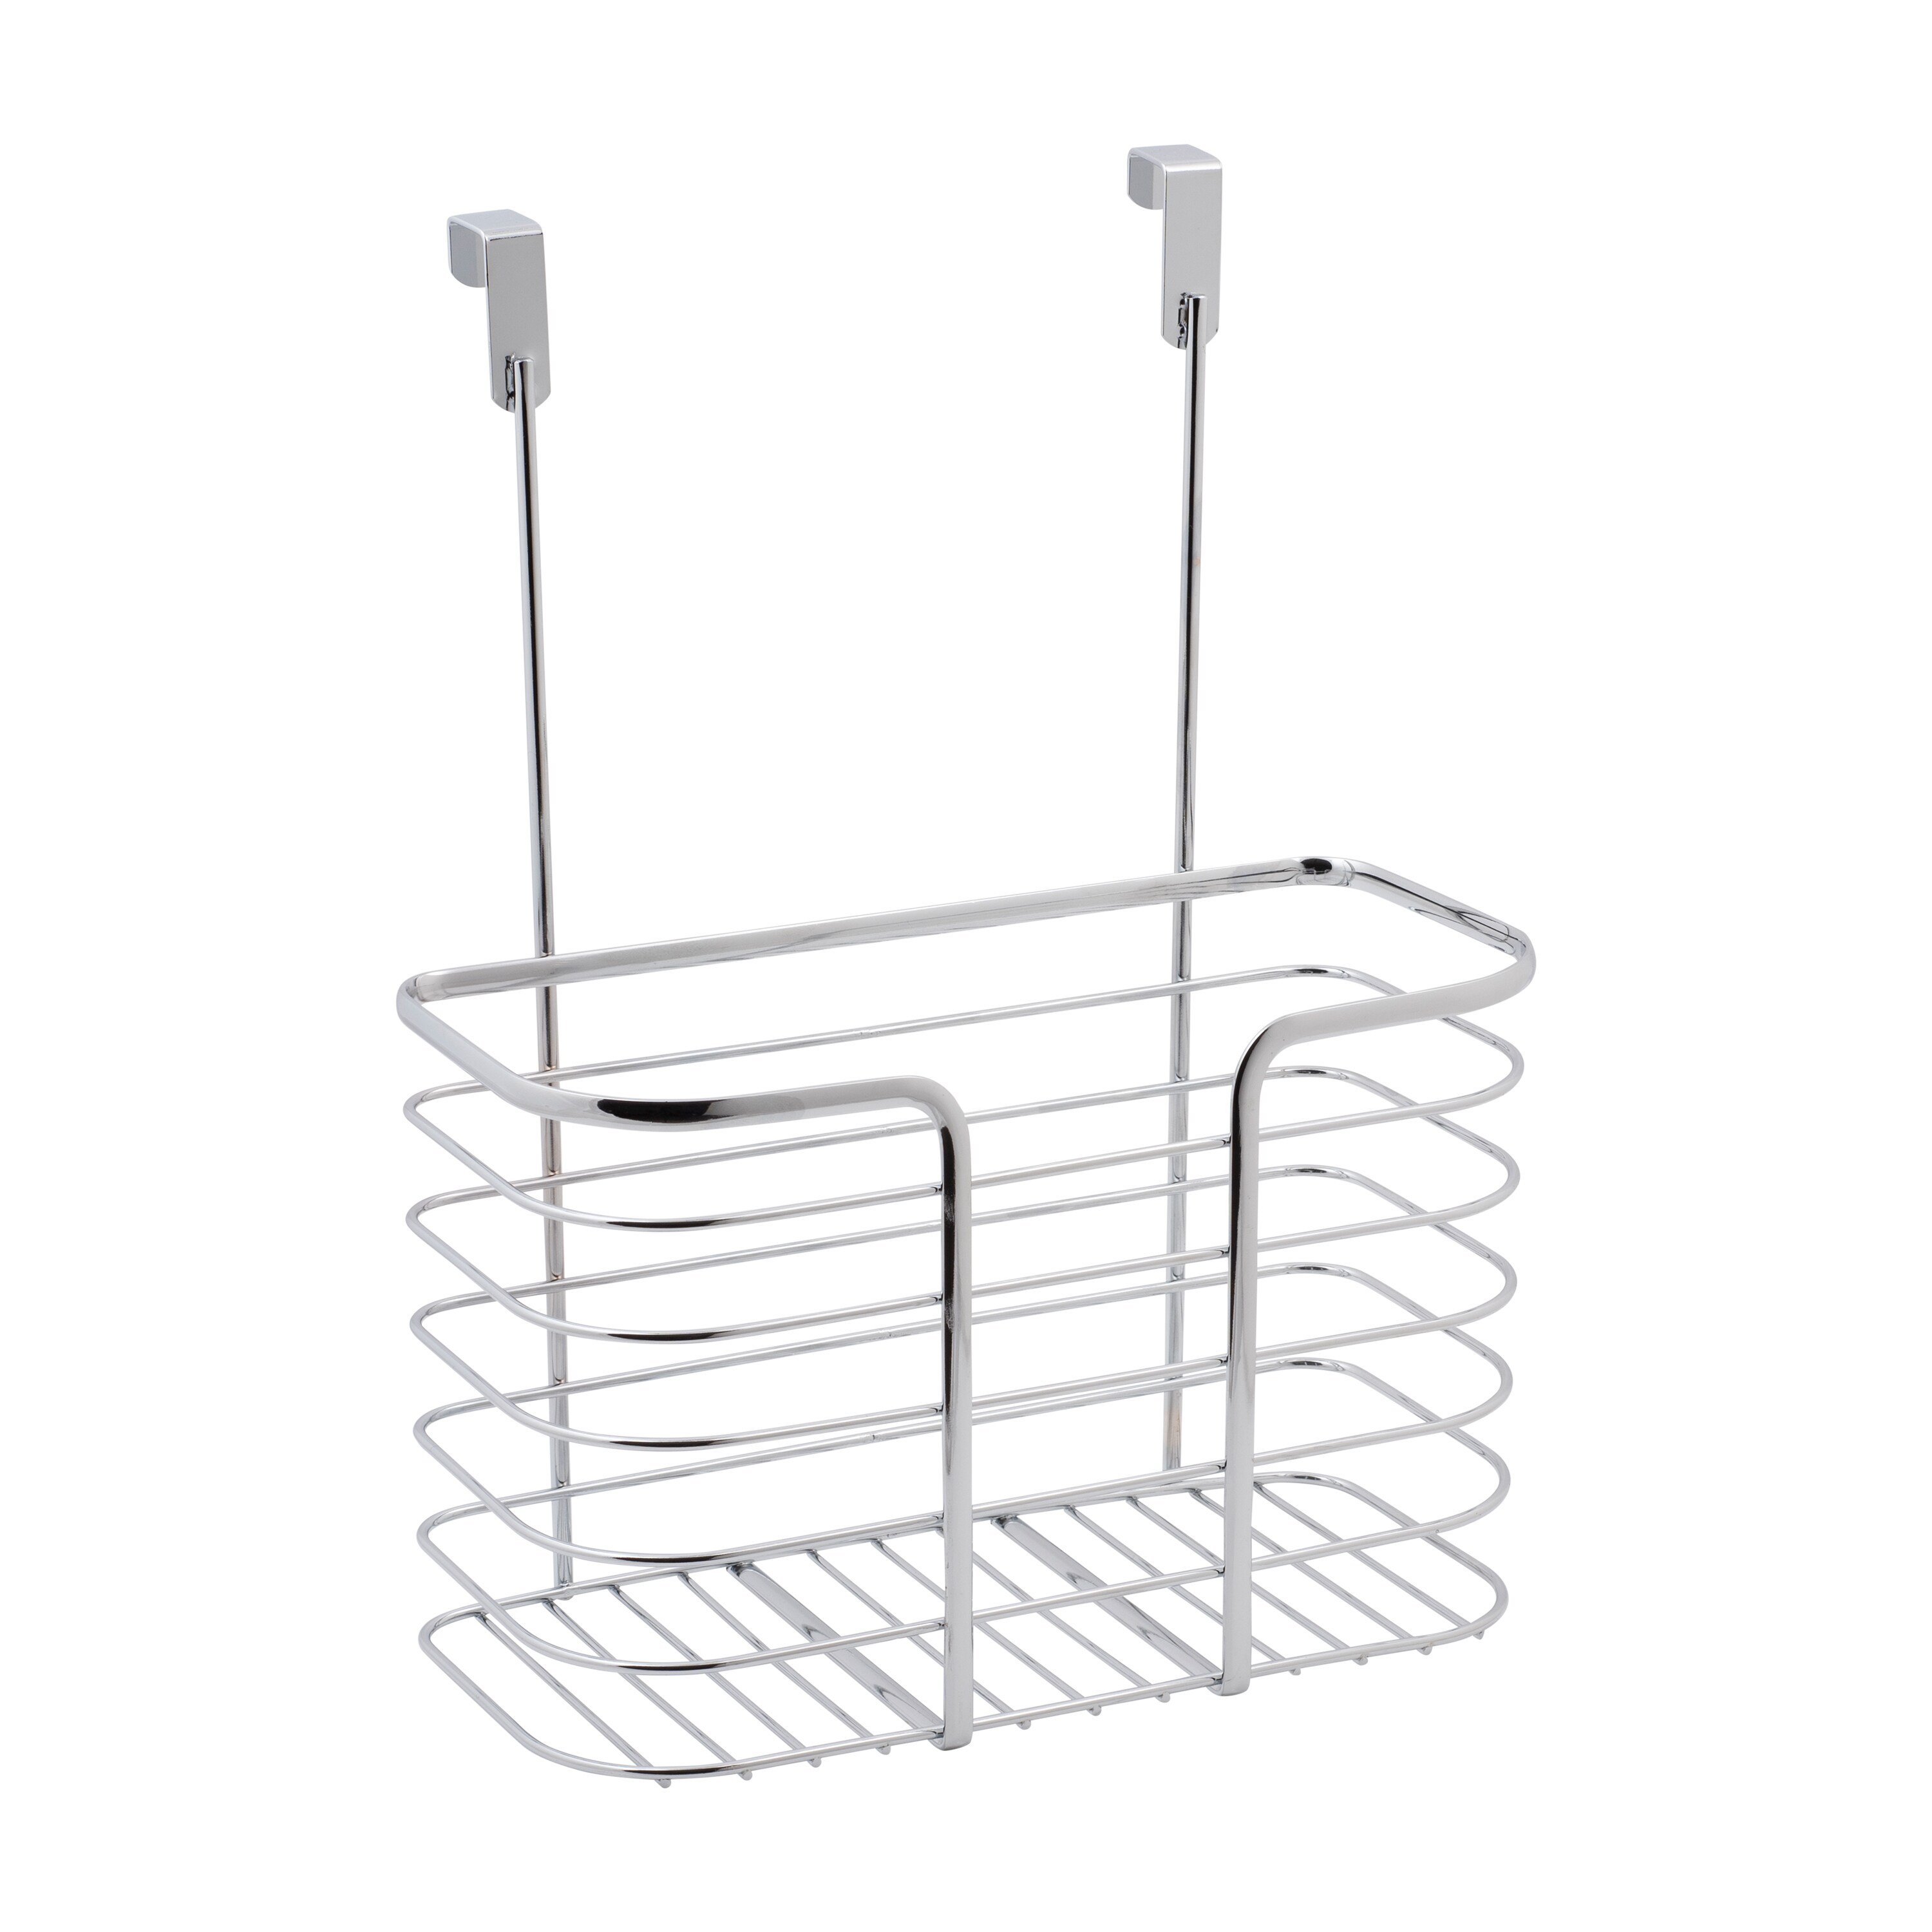 Over The Door Metallic Cabinet Hanging kitchen Storage Basket – THELOOTSALE